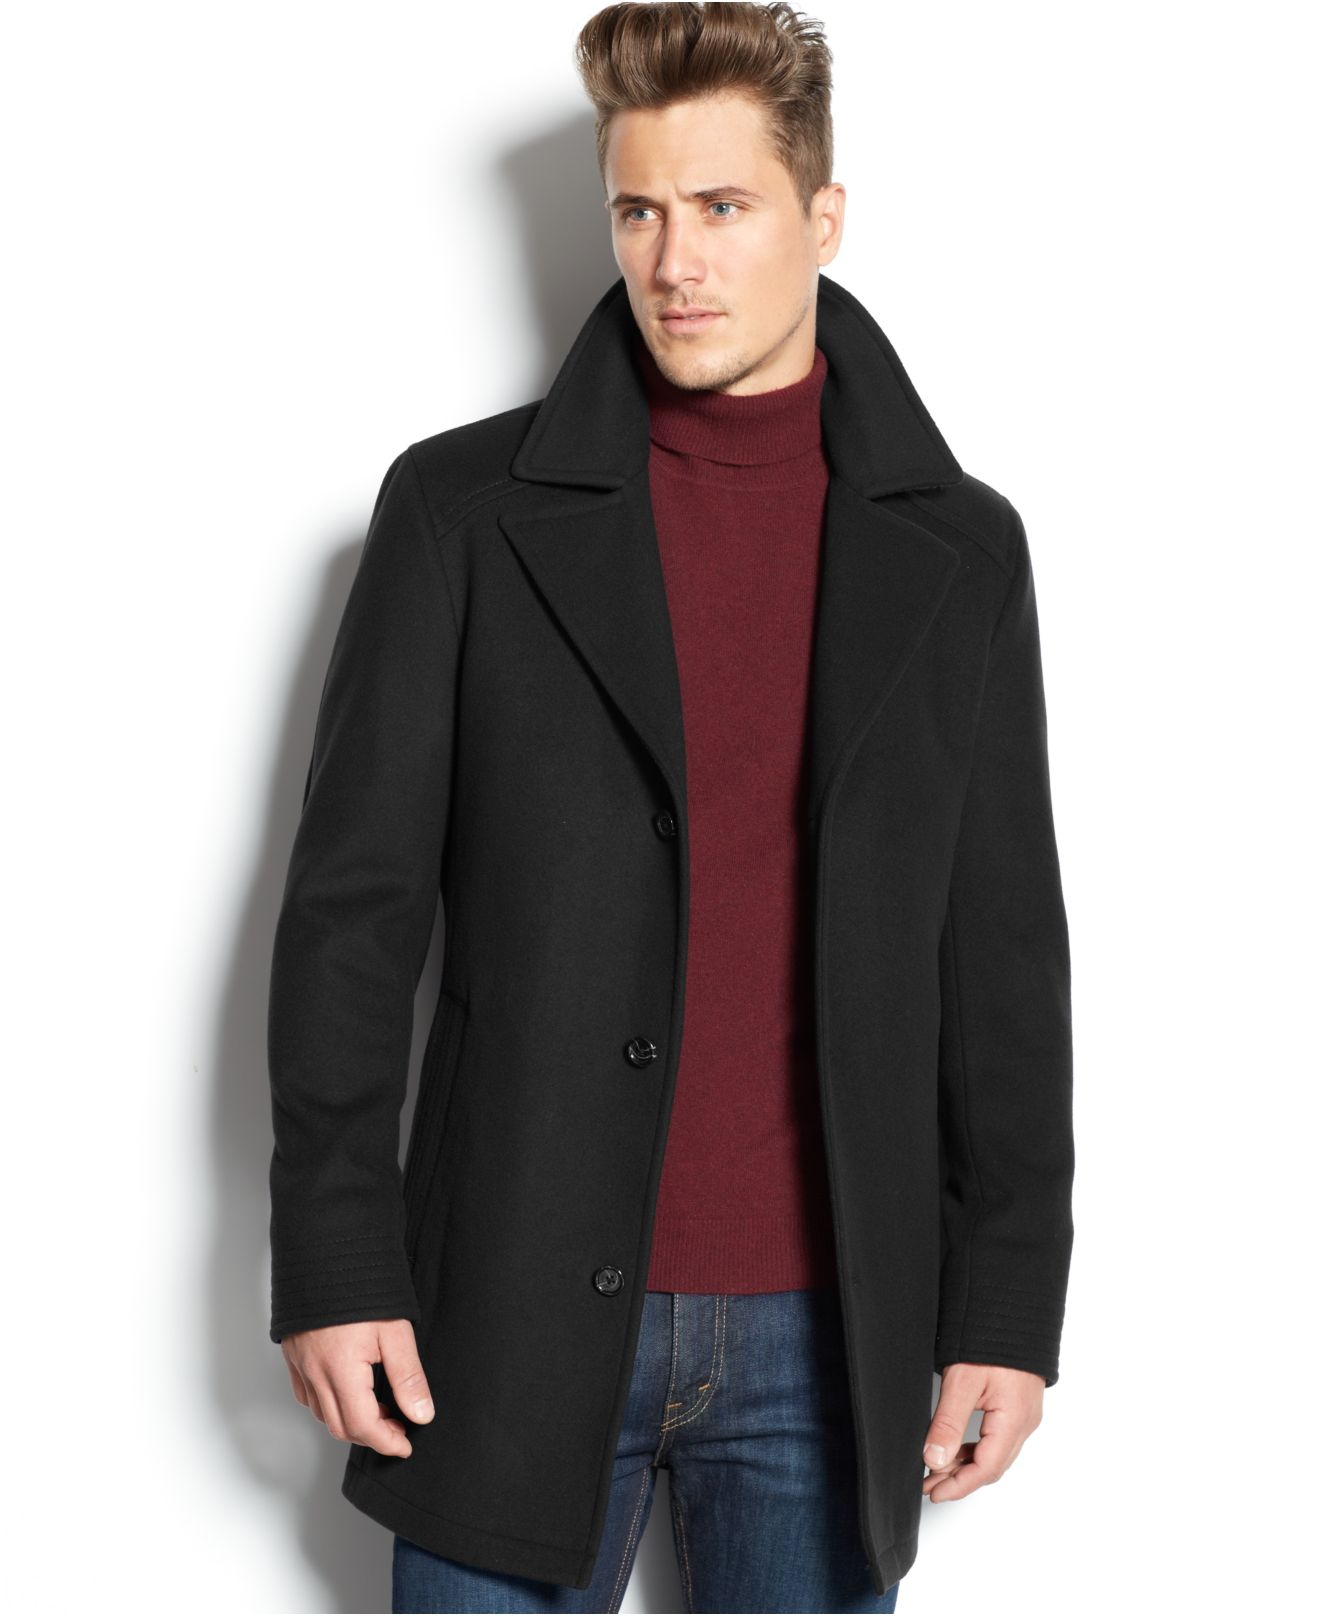 winter wear – MF. men's fashion